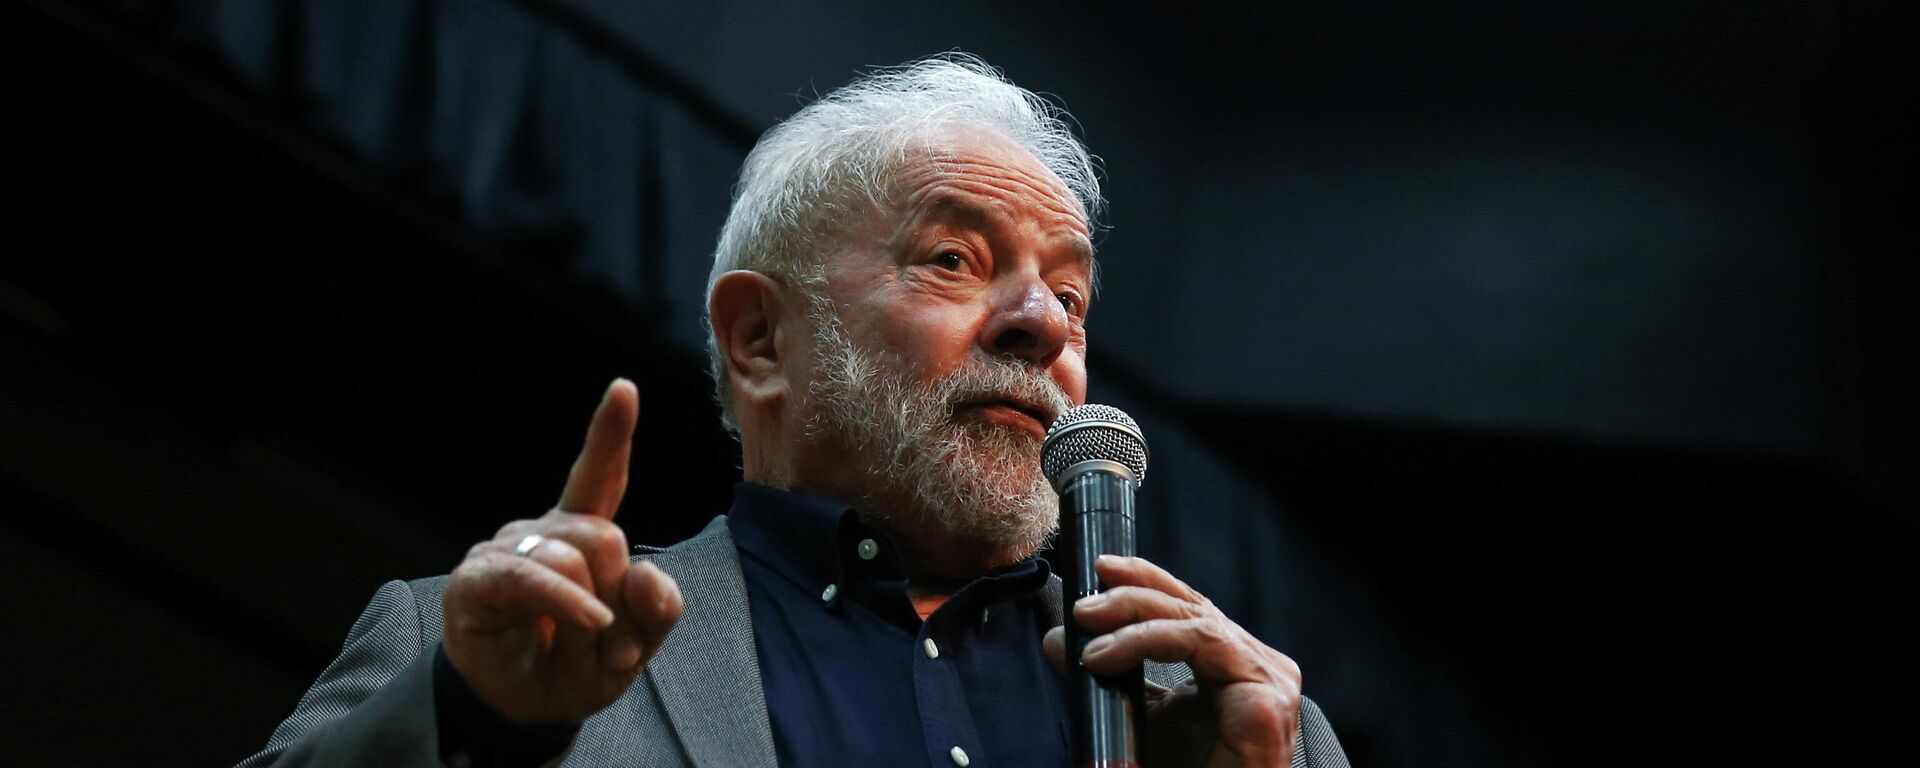 O ex-presidente Luiz Inácio Lula da Silva, em São Paulo, no Brasil, no dia 8 e dezembro de 2021 - Sputnik Brasil, 1920, 04.01.2022